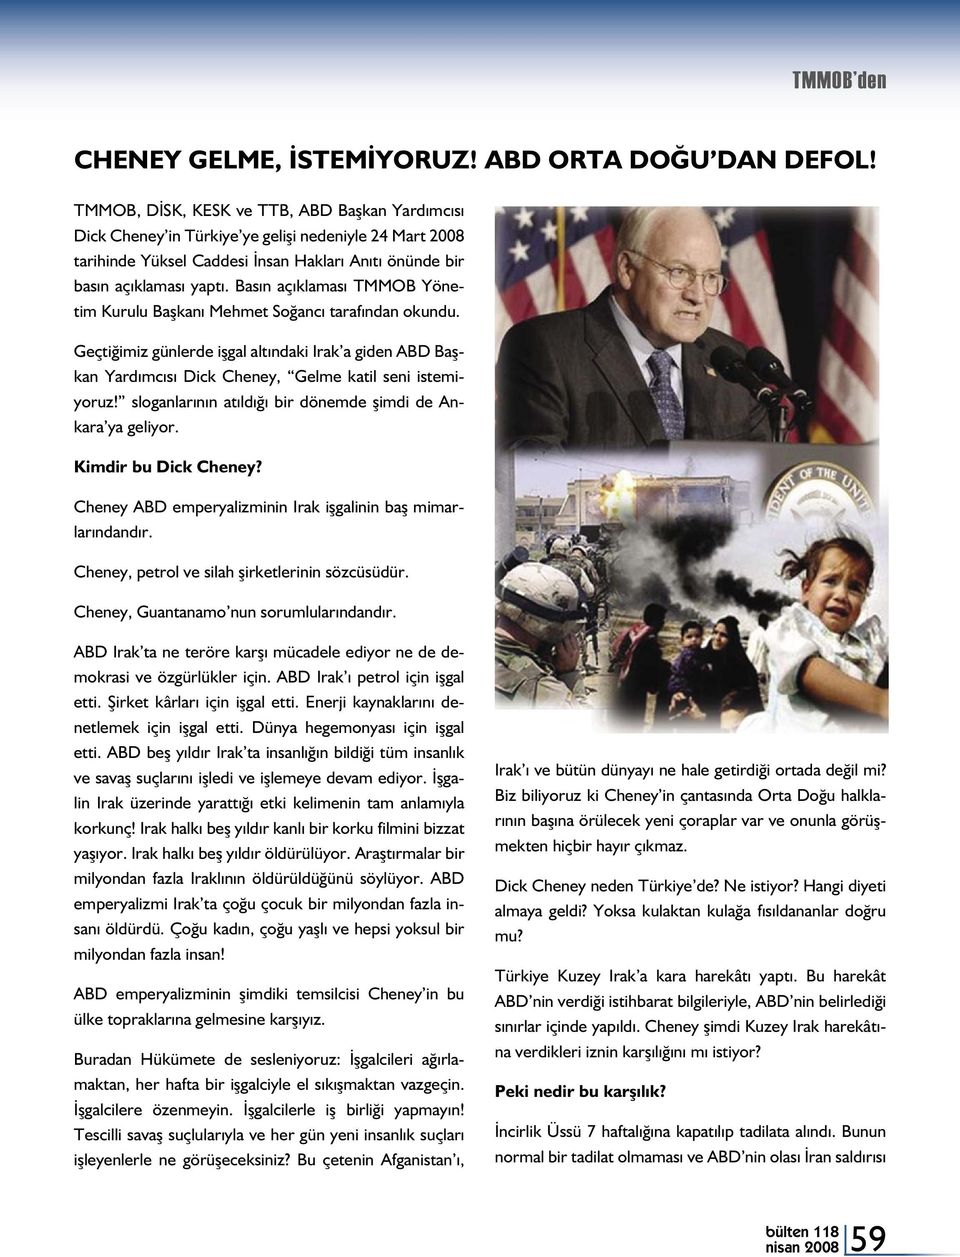 Basın açıklaması TMMOB Yönetim Kurulu Başkanı Mehmet Soğancı tarafından okundu. Geçtiğimiz günlerde işgal altındaki Irak a giden ABD Başkan Yardımcısı Dick Cheney, Gelme katil seni istemiyoruz!